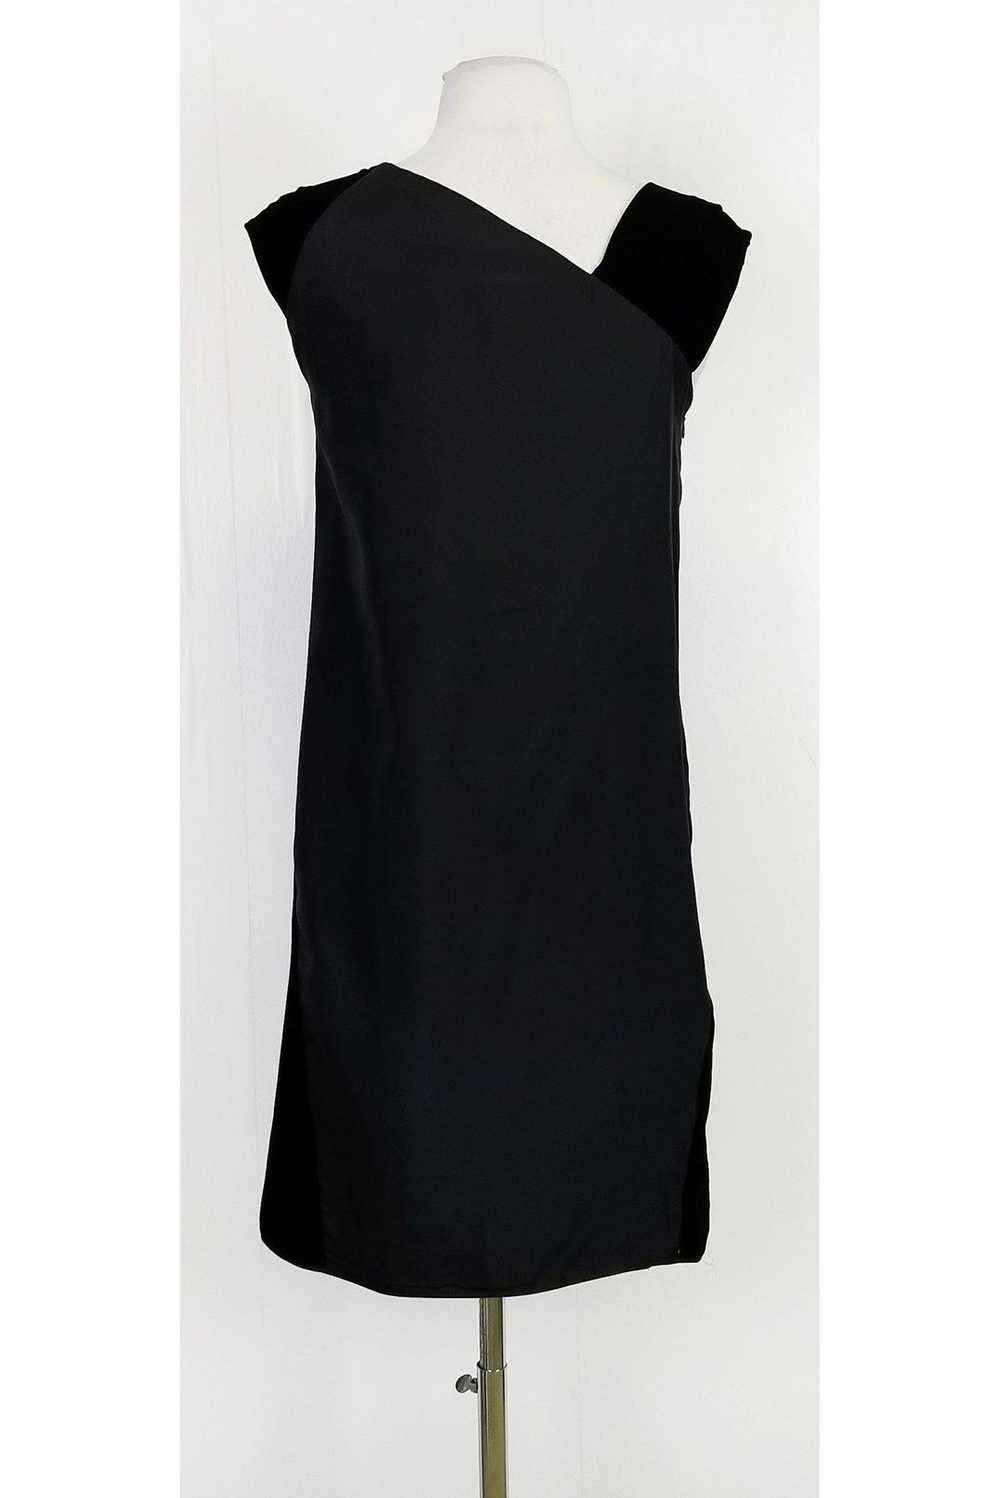 Miu Miu - Black Silk & Velvet Dress Sz 4 - image 3